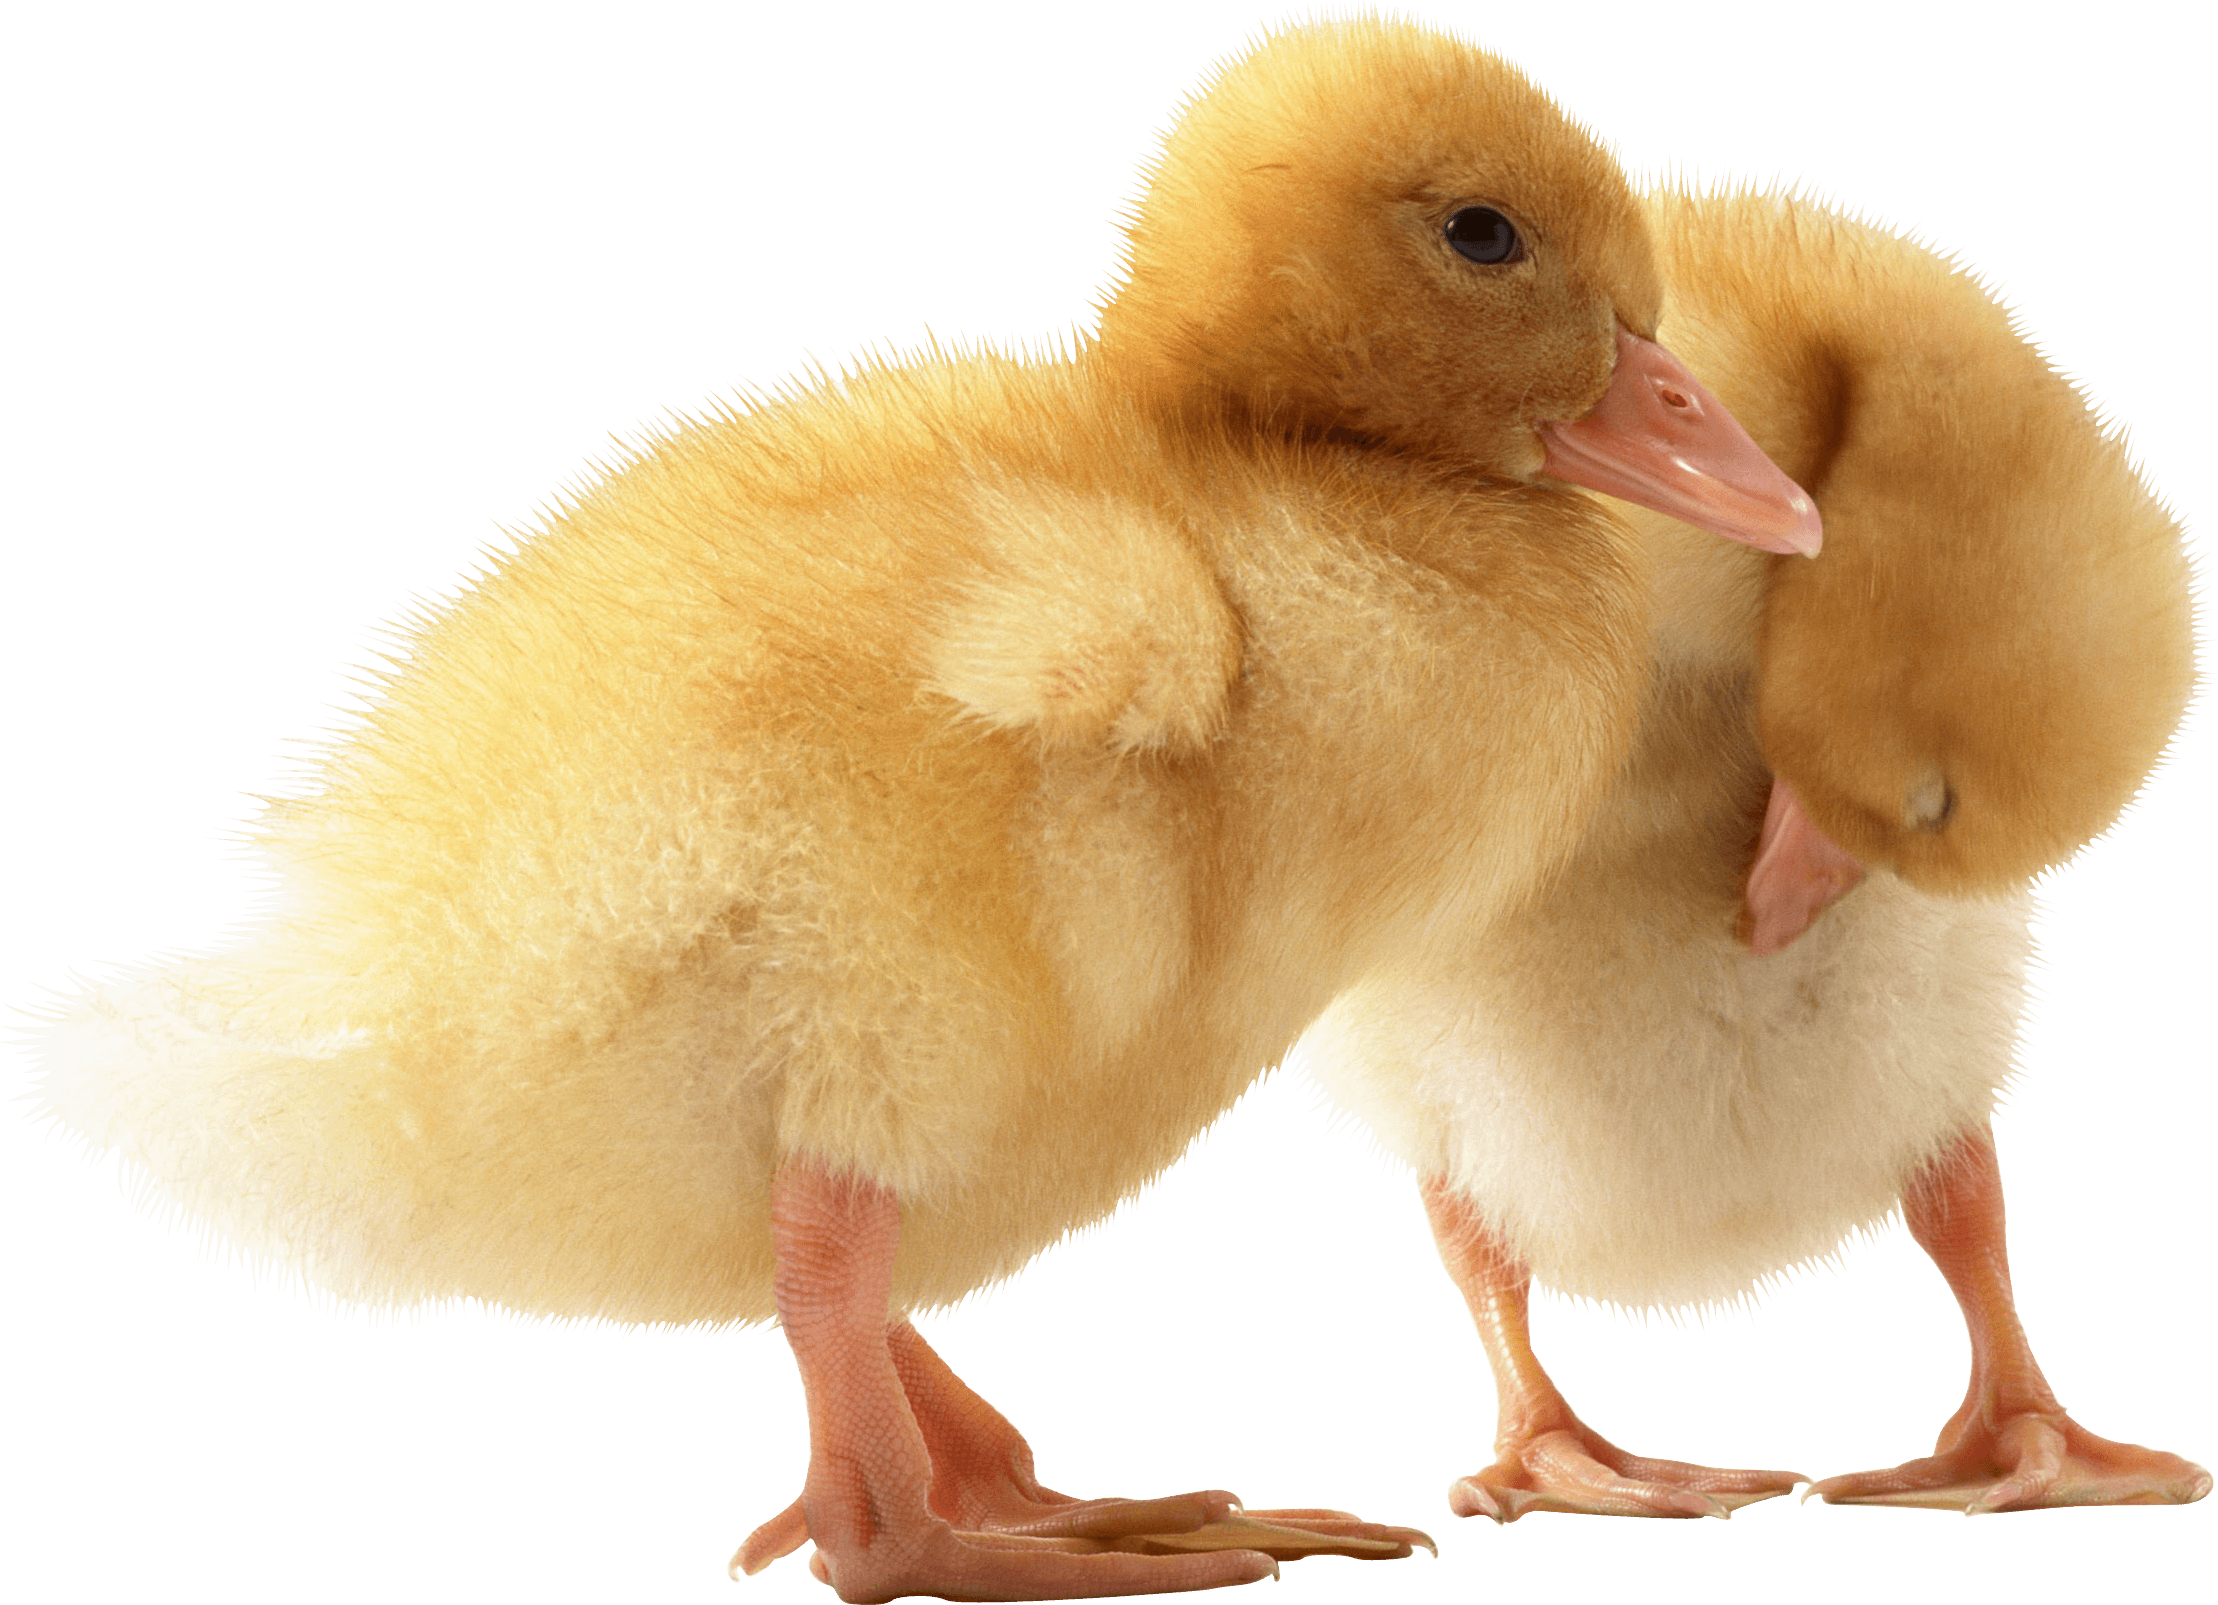 two cute little Ducklings